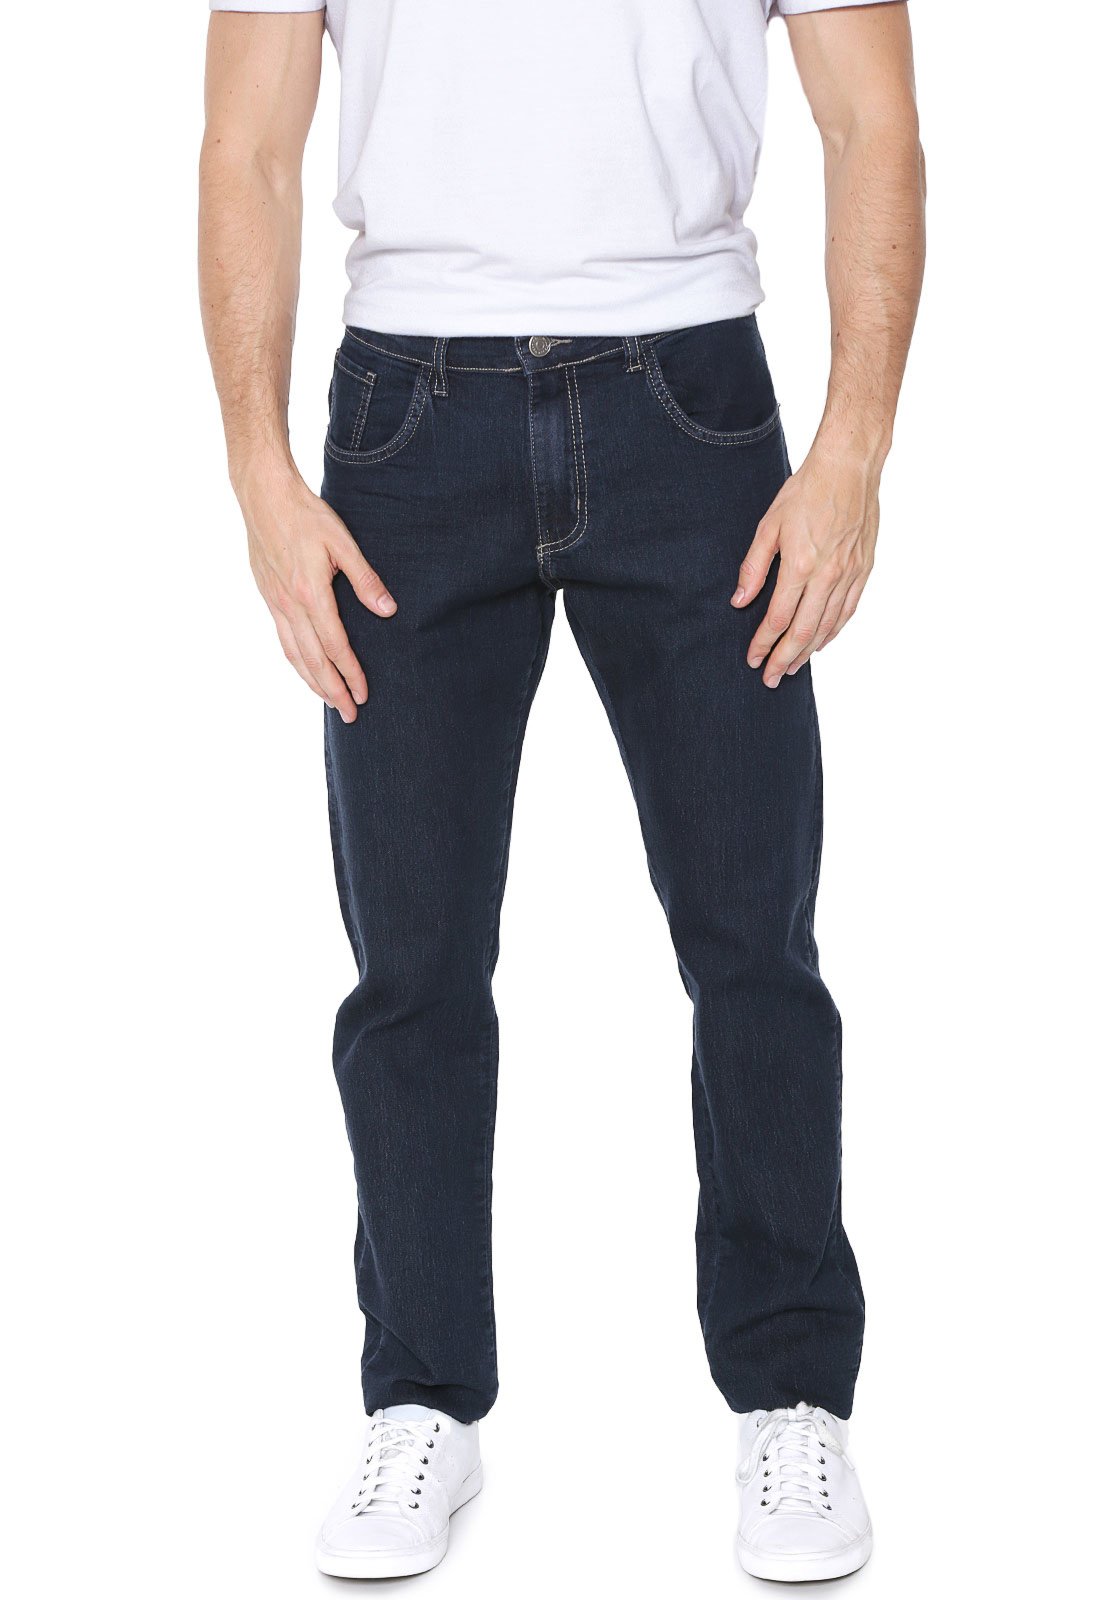 calça jeans masculina kanui